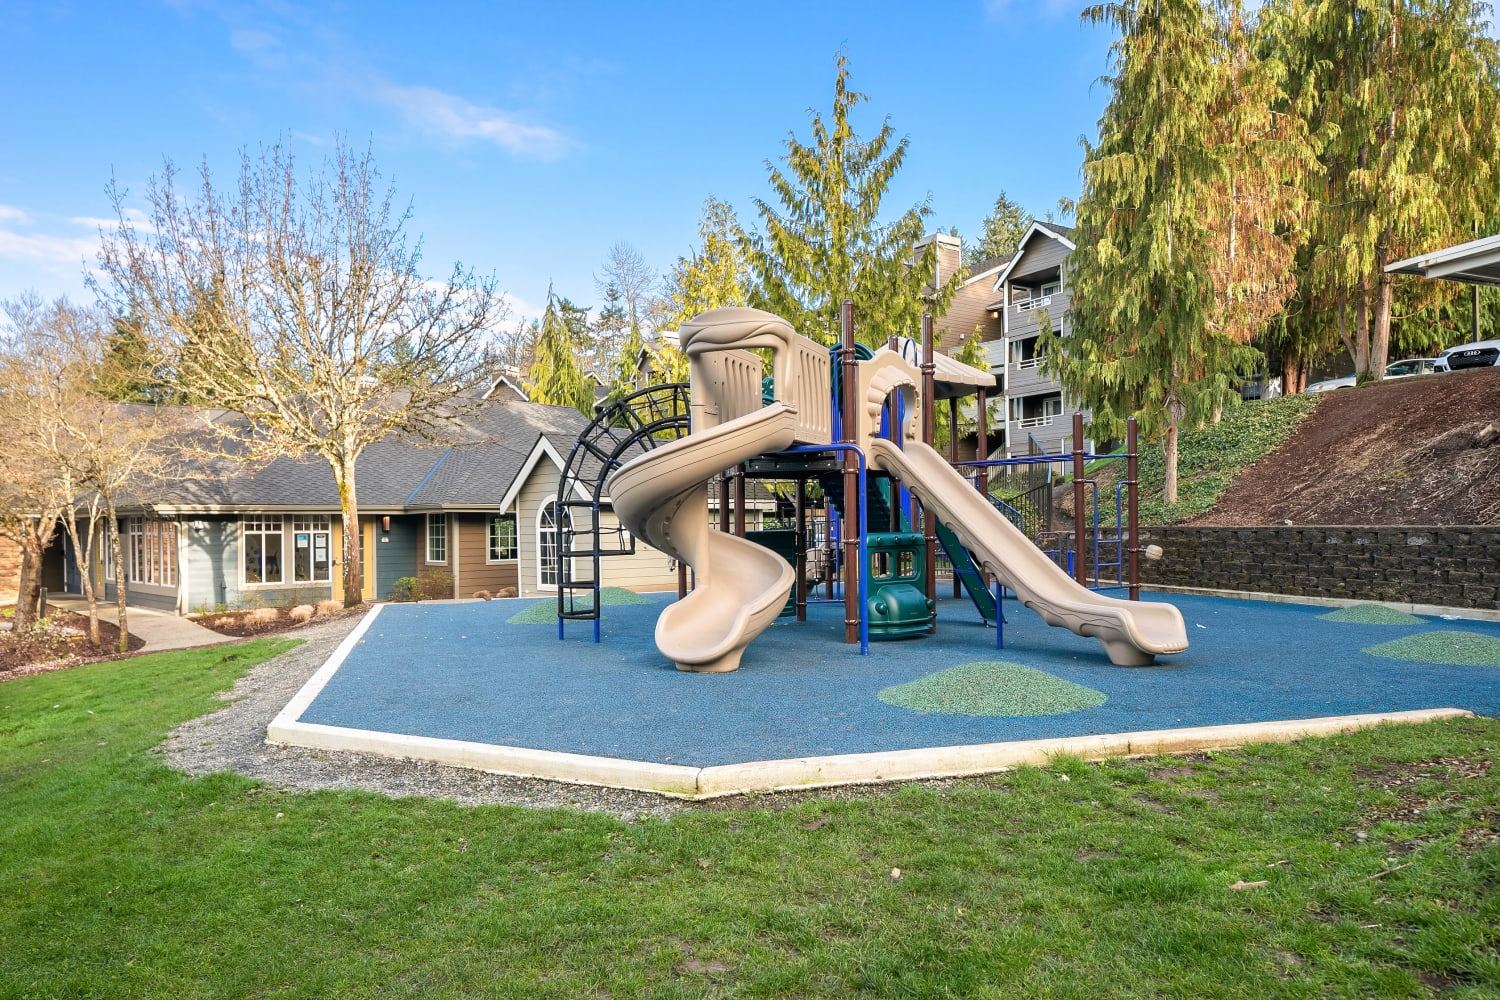 A children's playground at Overlook at Lakemont in Bellevue, Washington